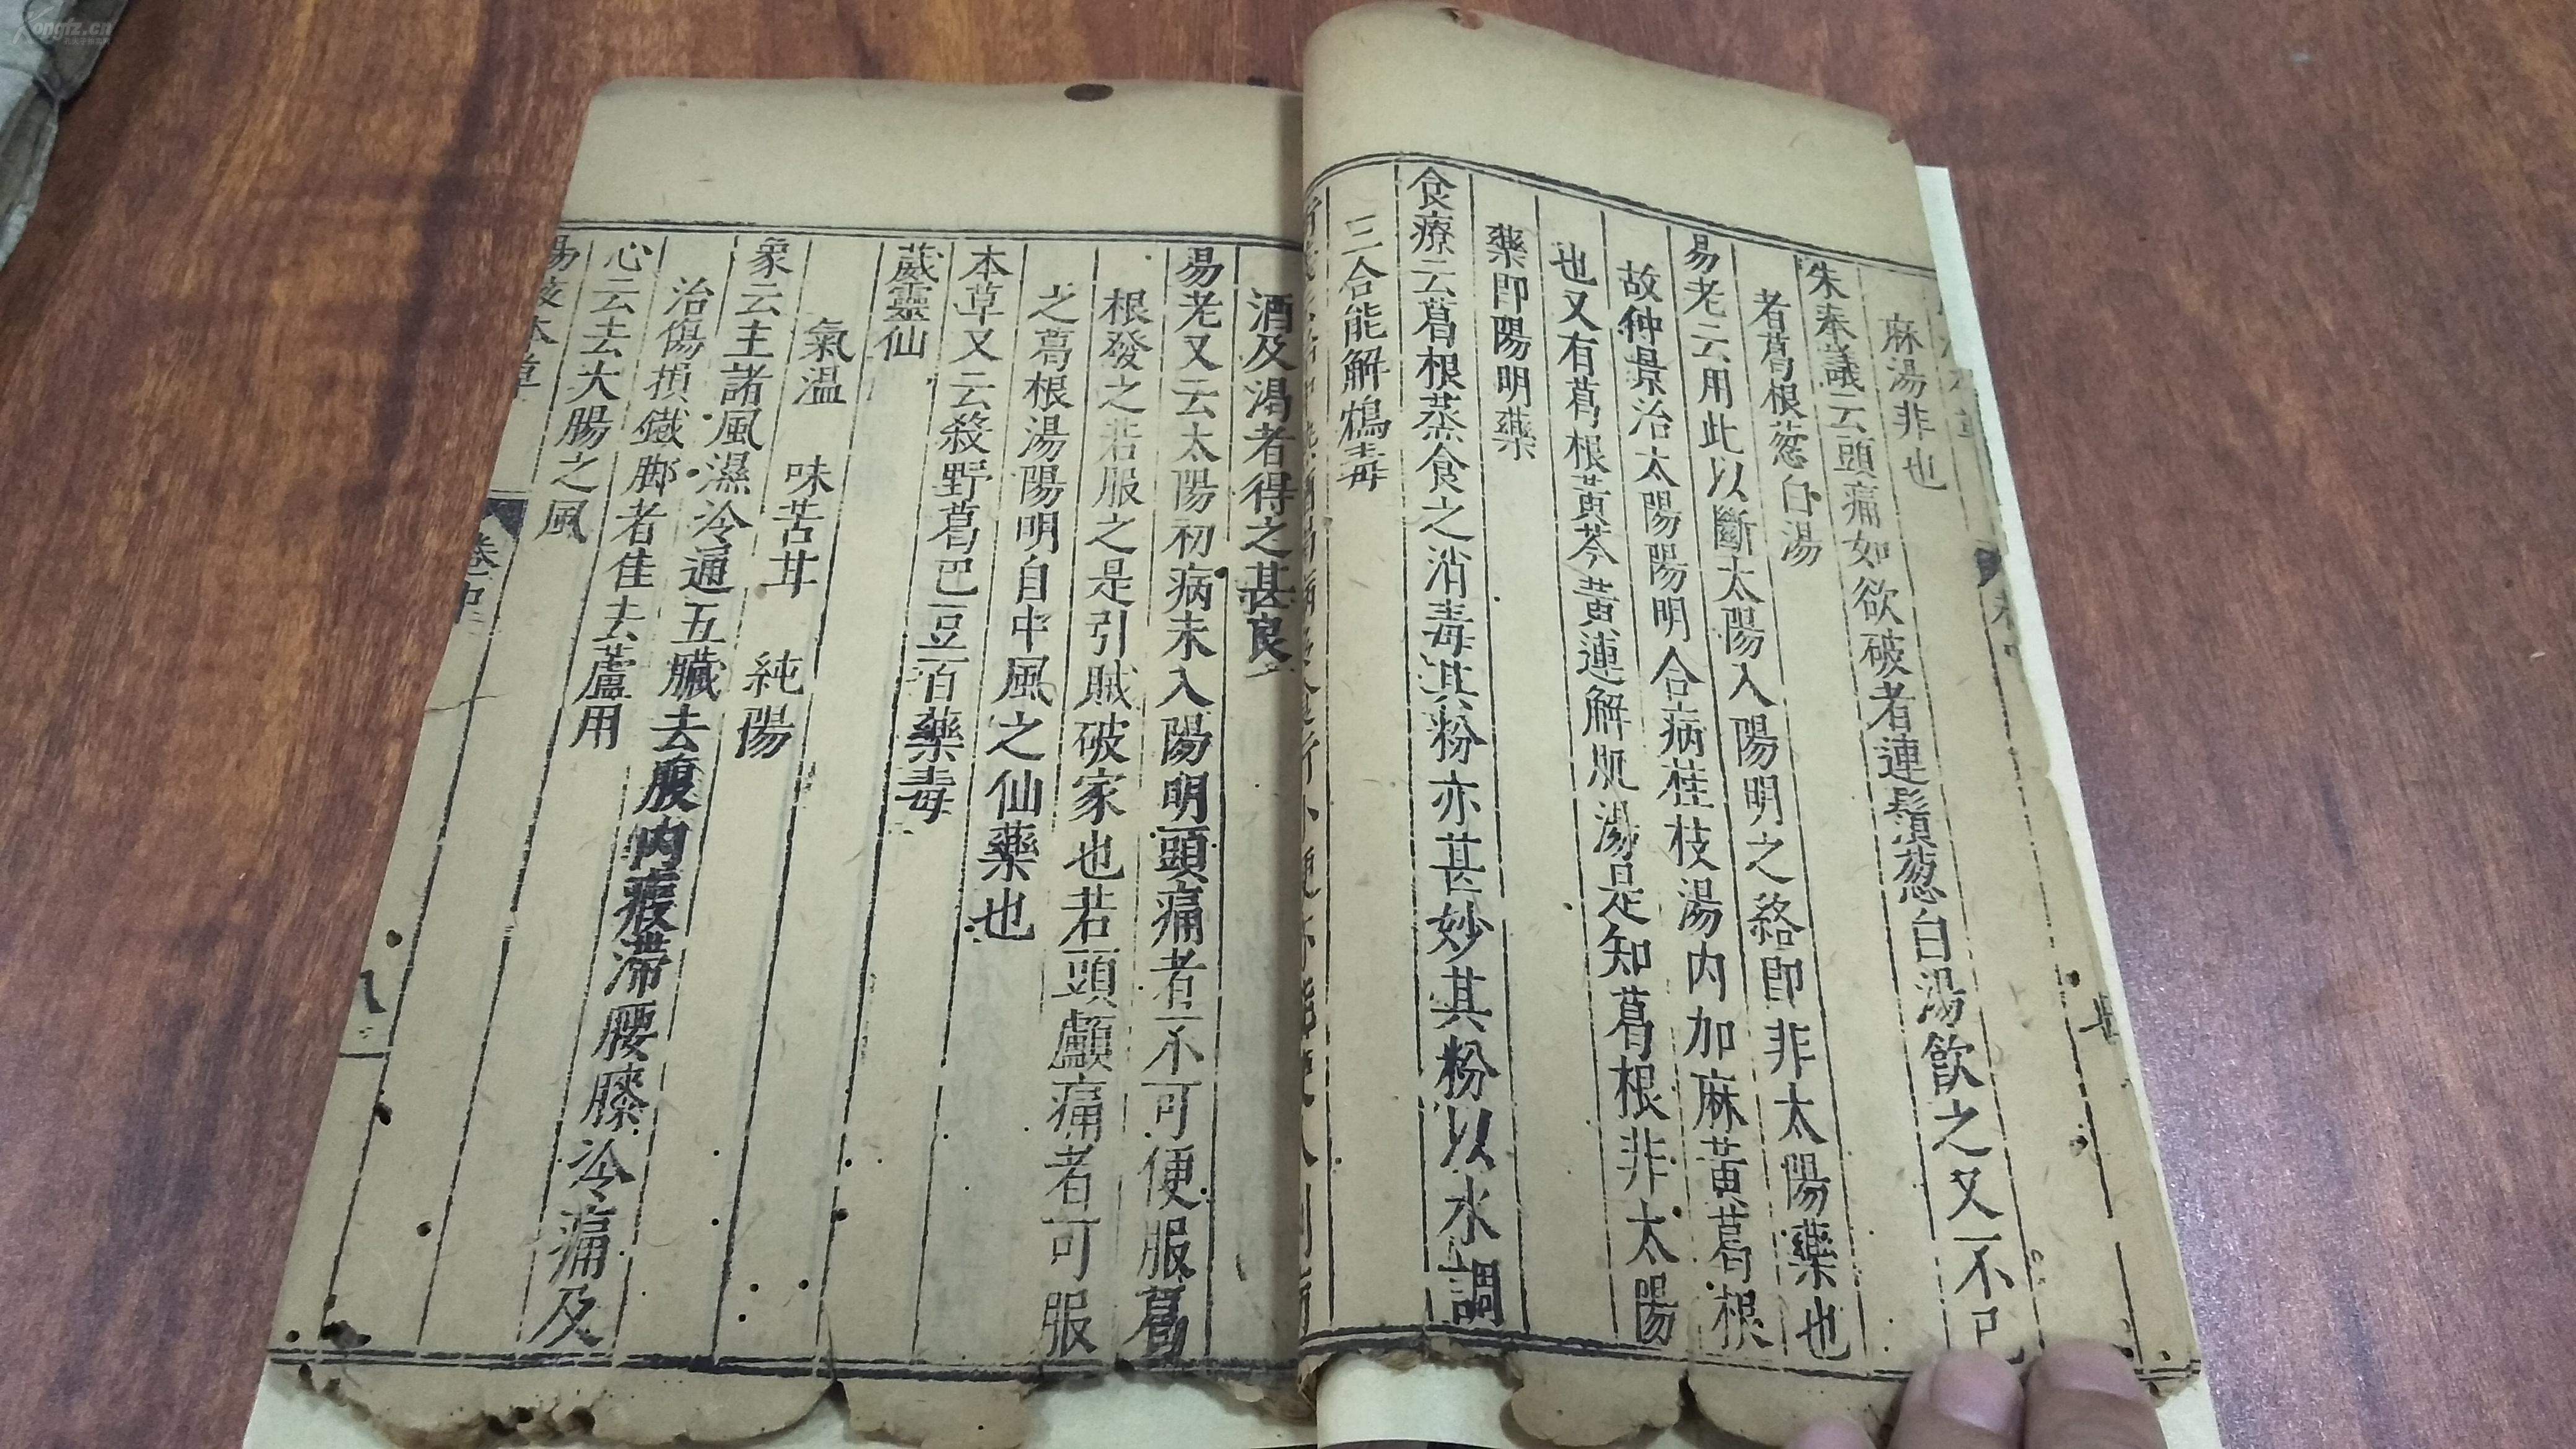 中医本草古籍图像对中医学知识的传播及发展作用